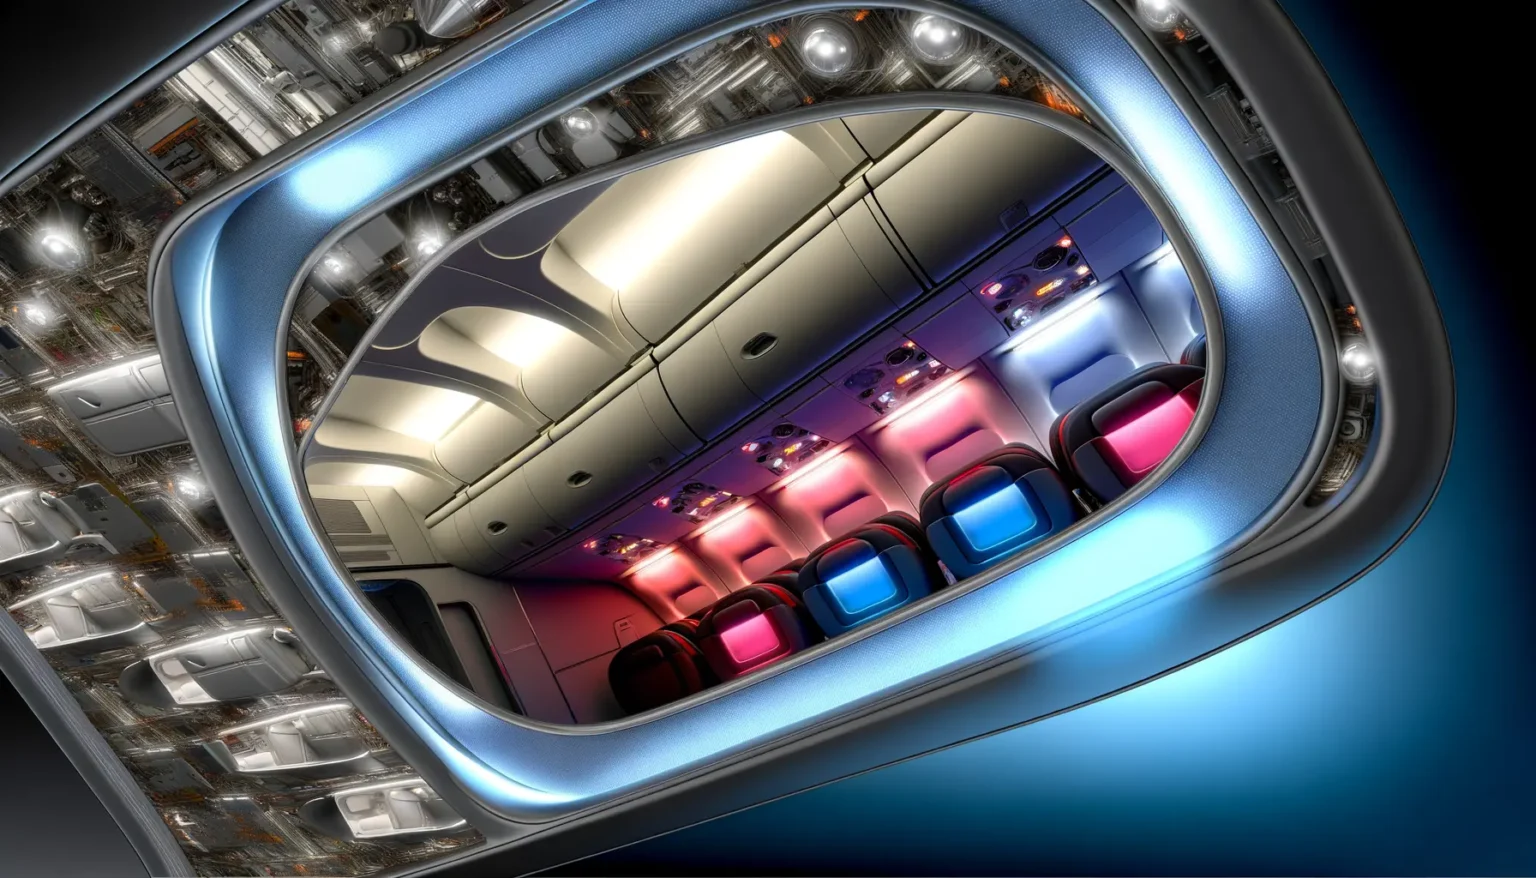 Blick aus der Perspektive eines Flugzeugfensters auf eine modern gestaltete Flugzeugkabine mit bunten Sitzen in Pink, Schwarz und Blau unter einer stilvollen, beleuchteten Decke. Draußen sind komplexe mechanische Details des Flugzeugrumpfs und -flügels sichtbar, was das Bild futuristisch erscheinen lässt.